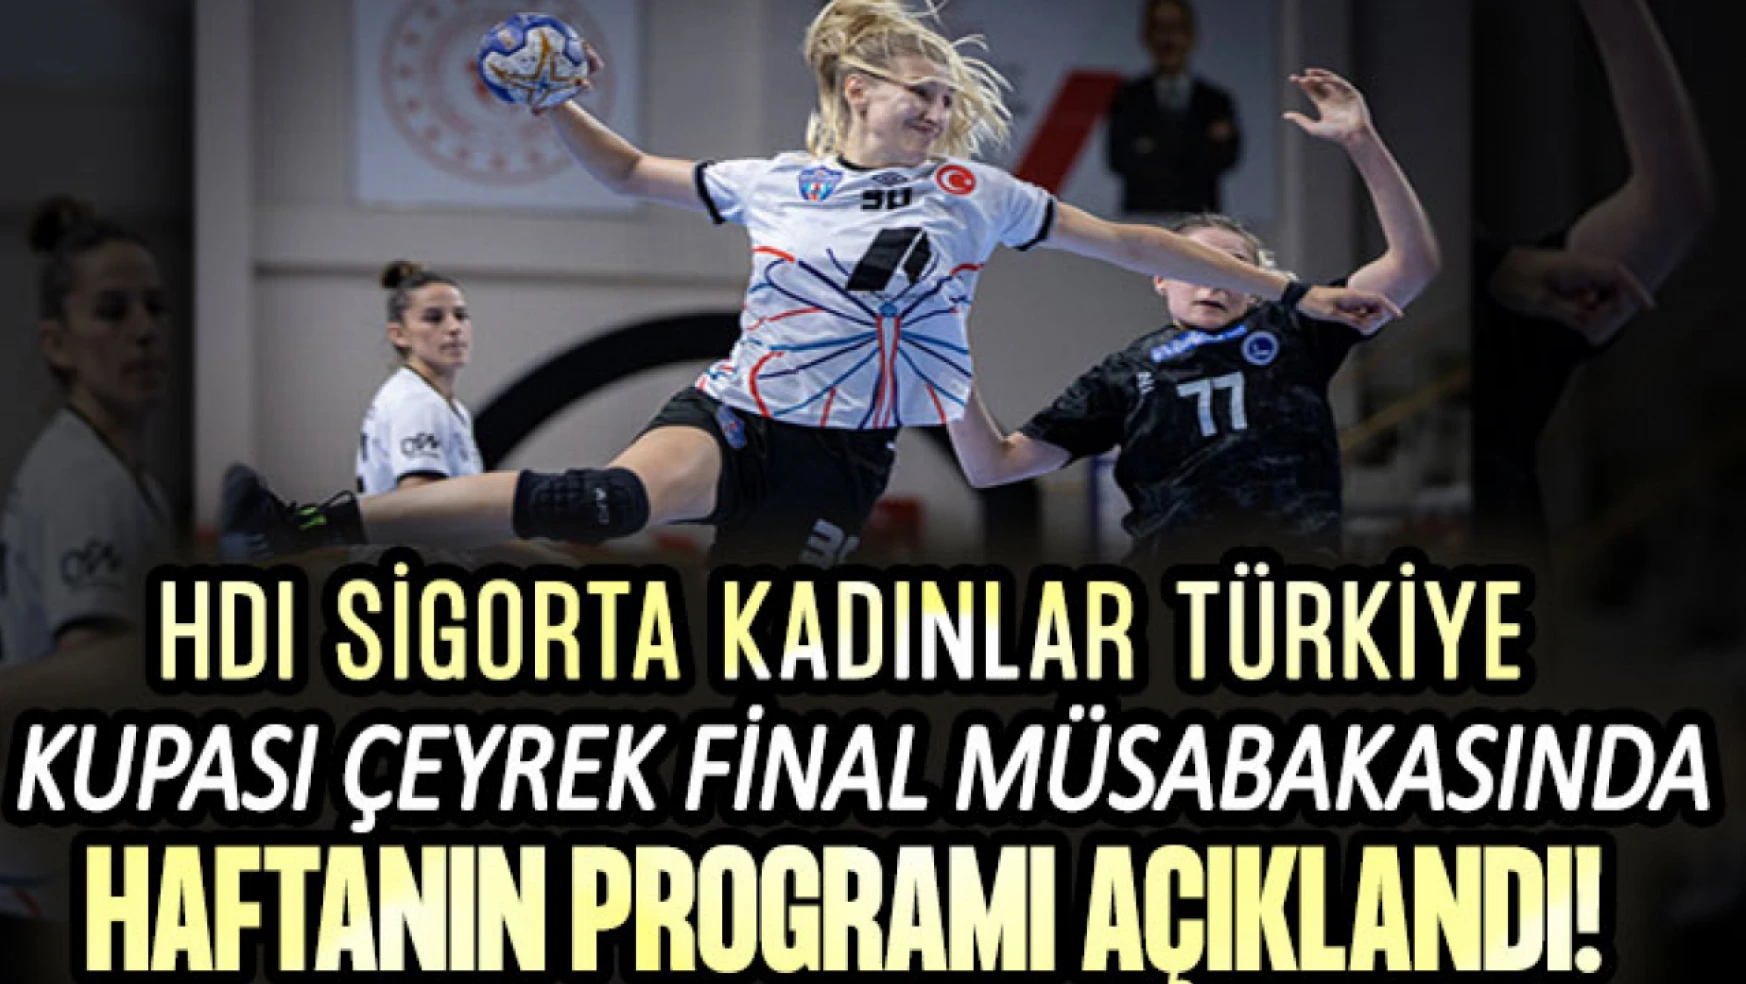 HDI Sigorta Kadınlar Türkiye Kupası Çeyrek Final Rövanş Müsabakaları Programı Açıklandı